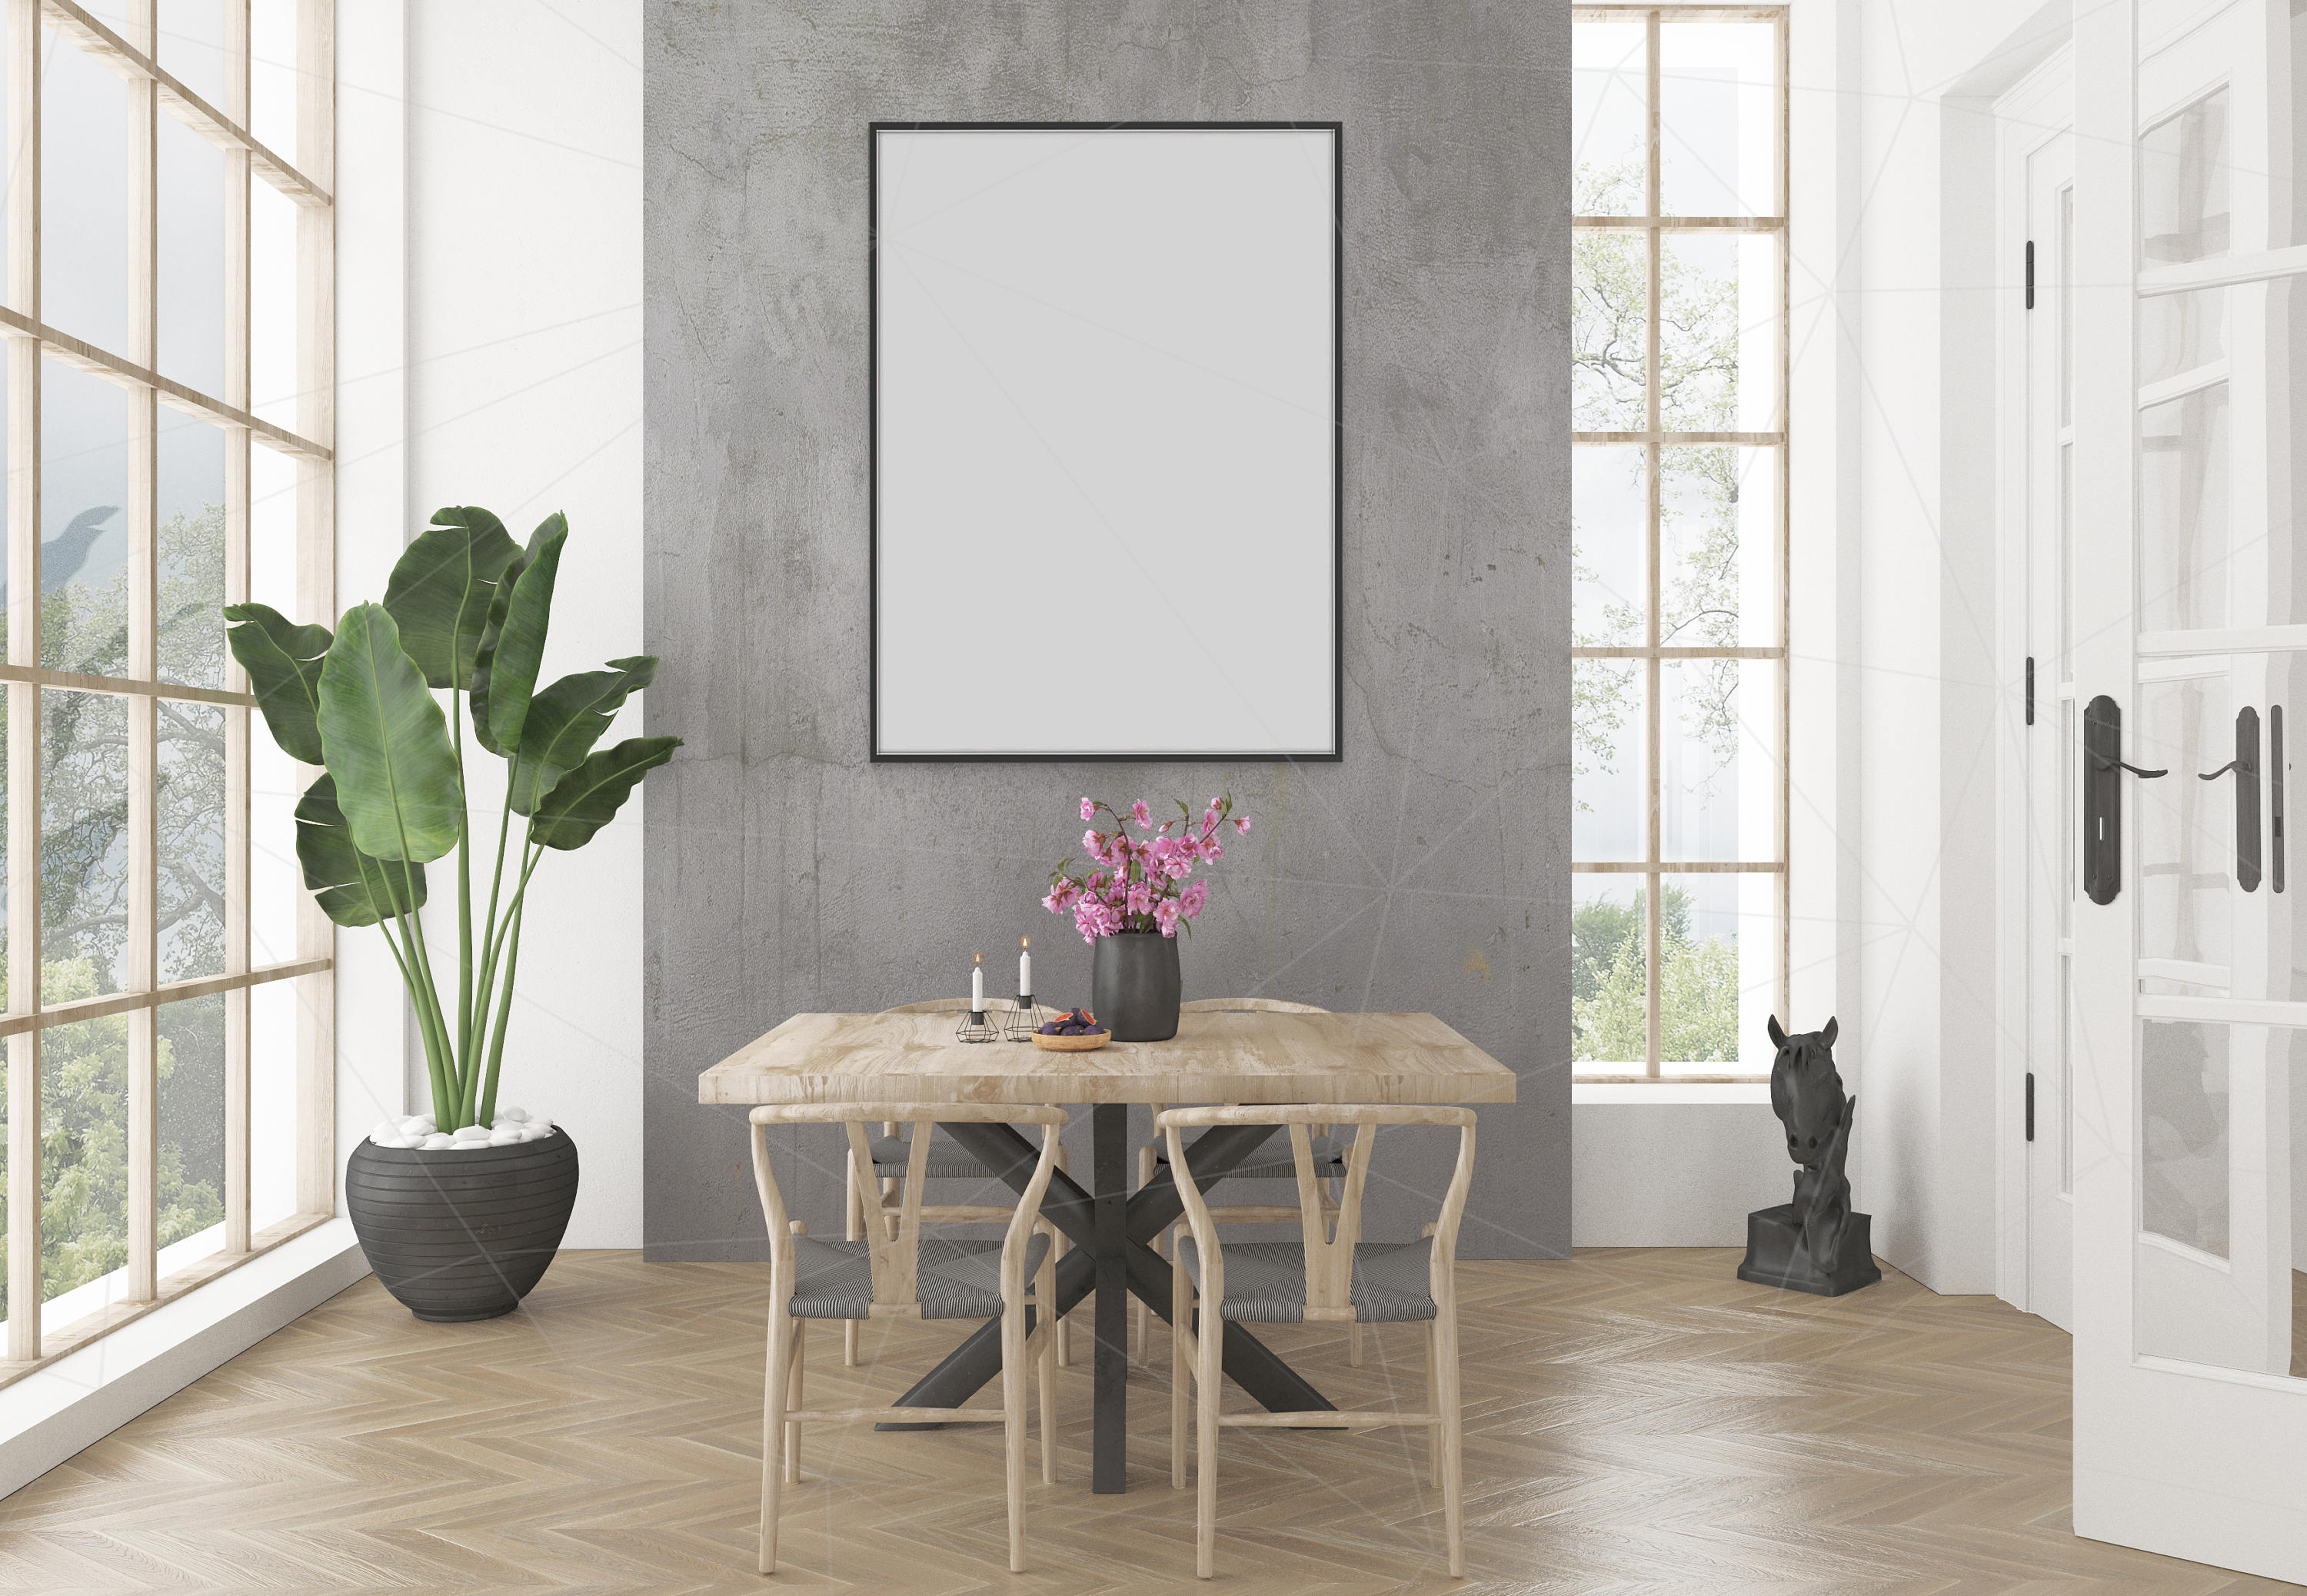 Download Blank Wall Mockup Black Frame Art Dining Room Interior Room | Etsy